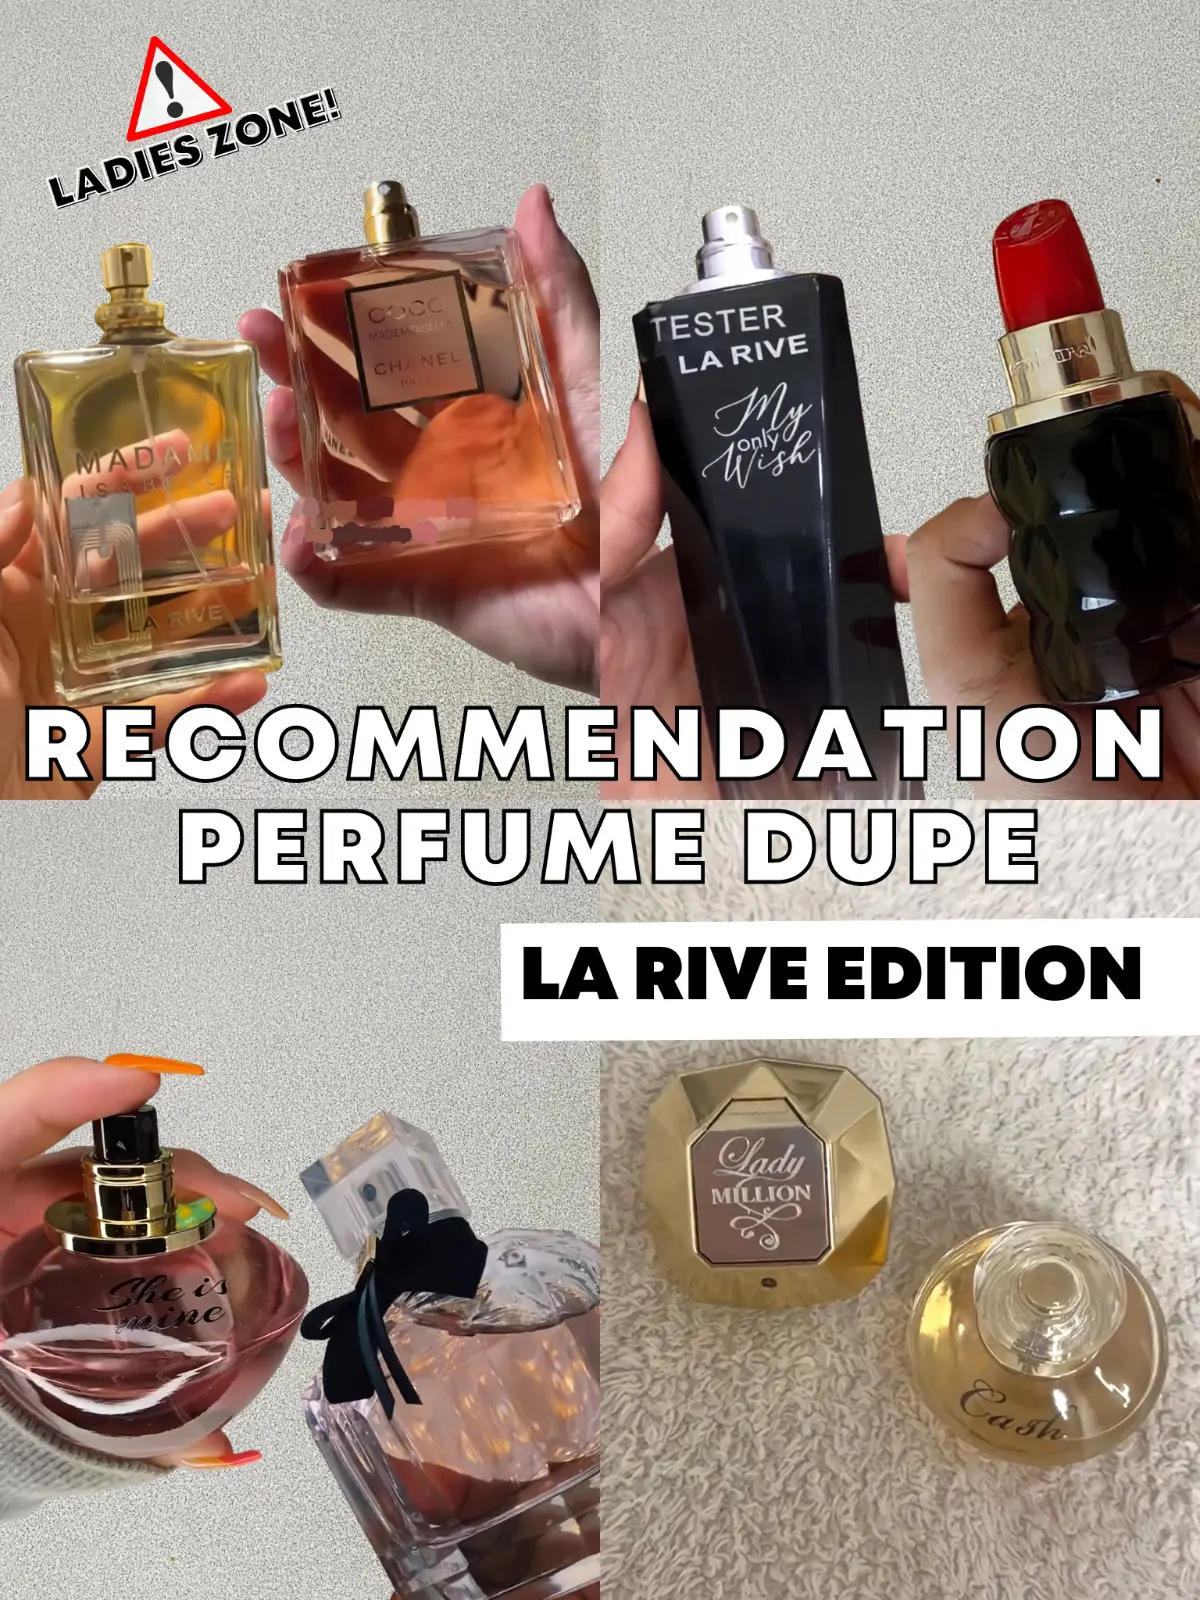 La Rive Dream Woman Perfume review